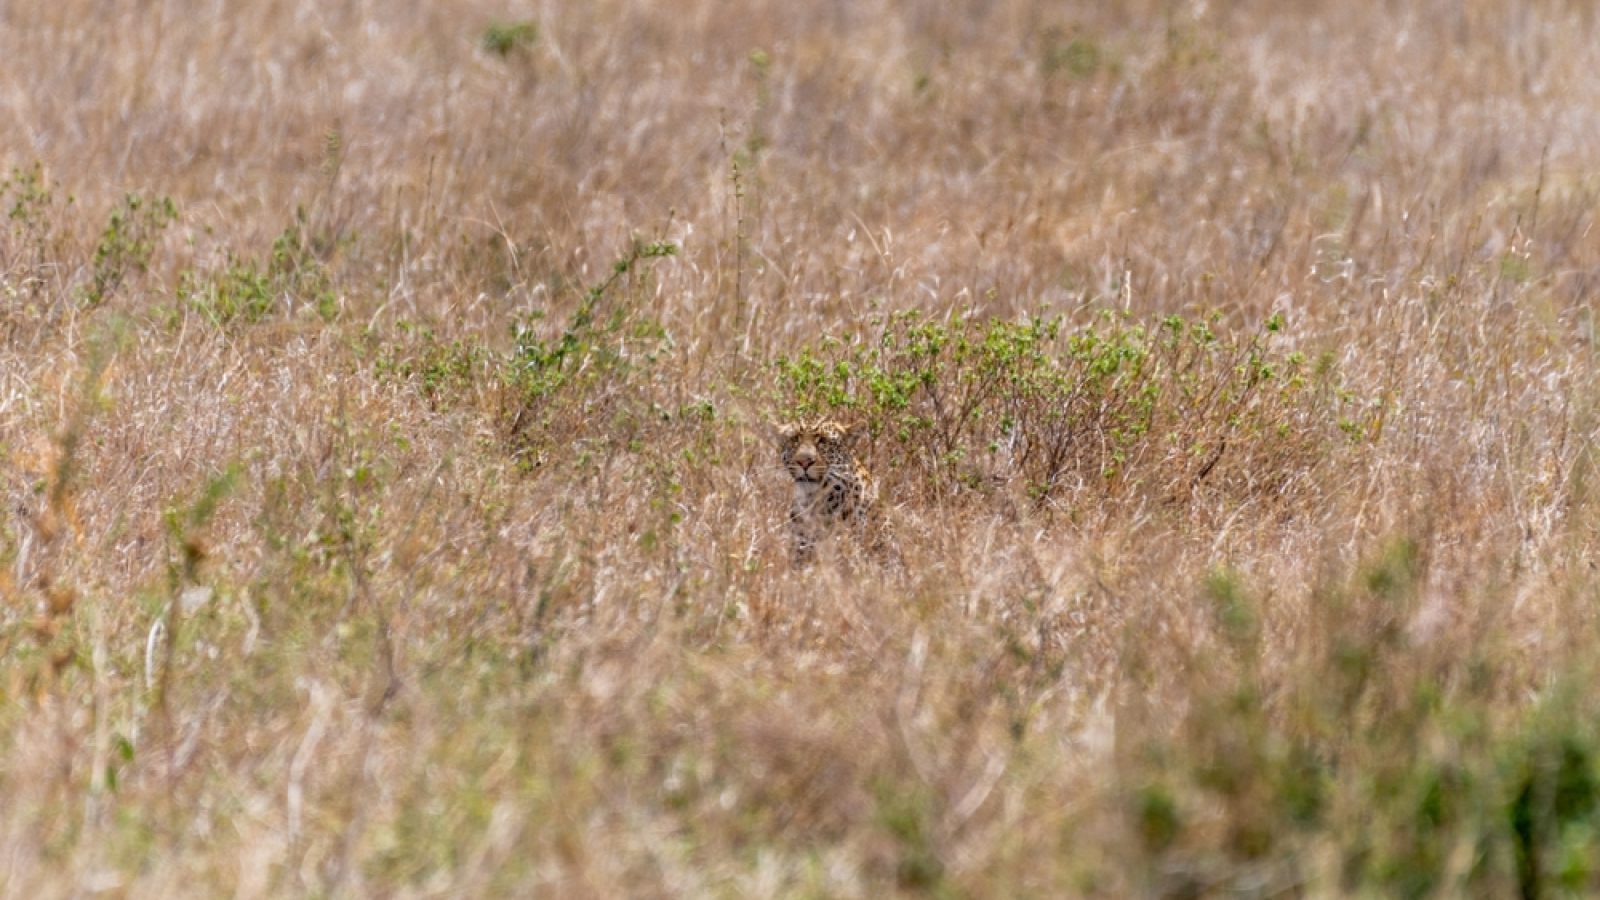 wild cheetah hides in grass.